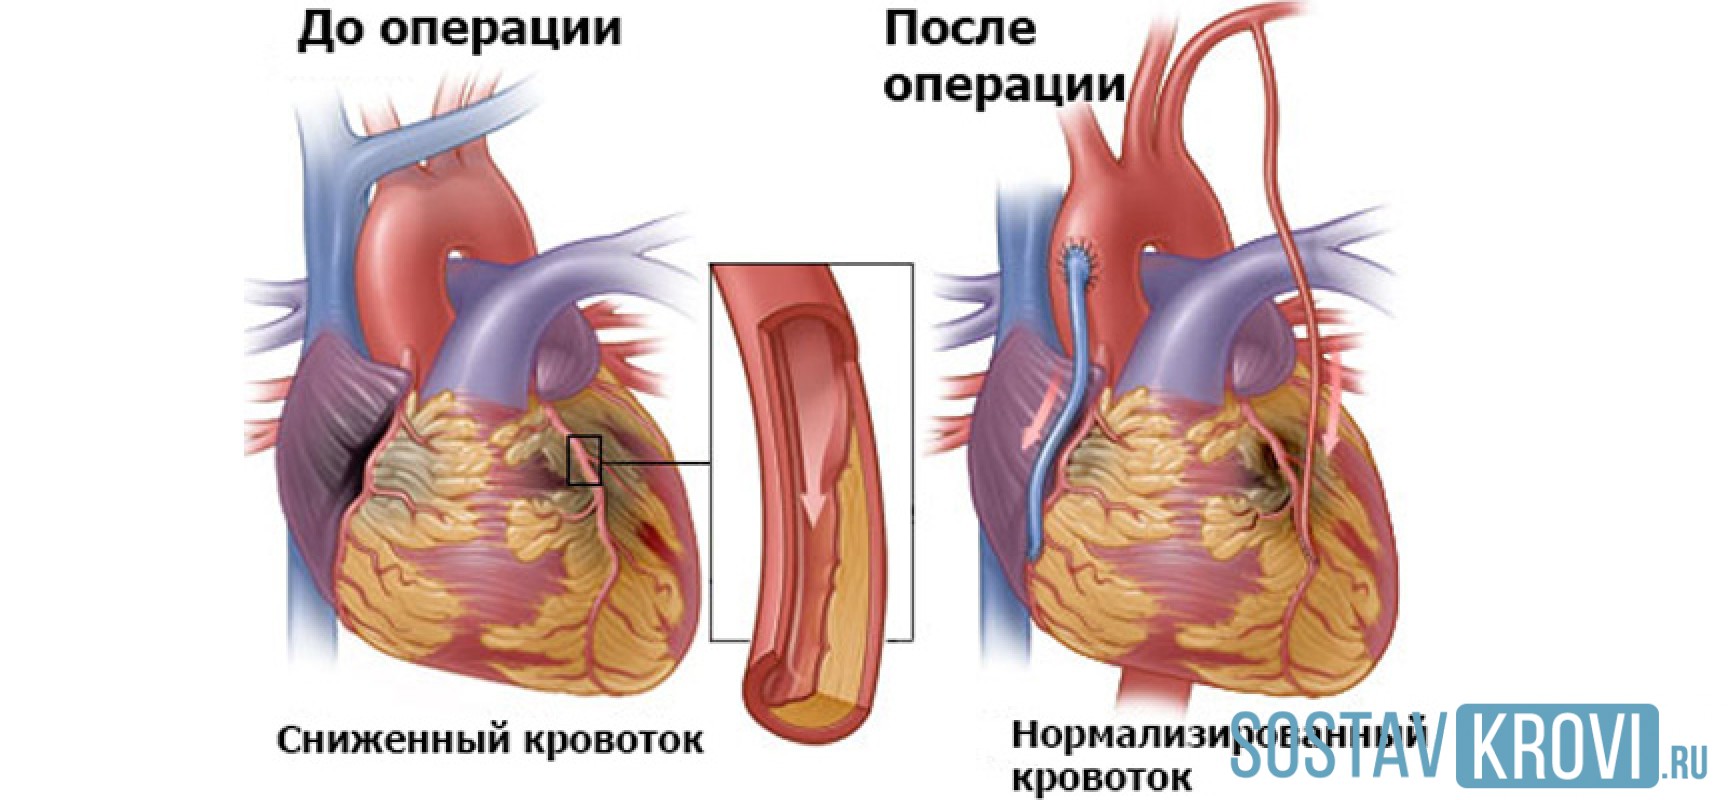 Что такое шунтирование сердца и сосудов. Шунтирование коронарных артерий. Аортокоронарное шунтирование хирургия. Маммарно коронарное шунтирование. Коронарное шунтирование сосудов сердца.